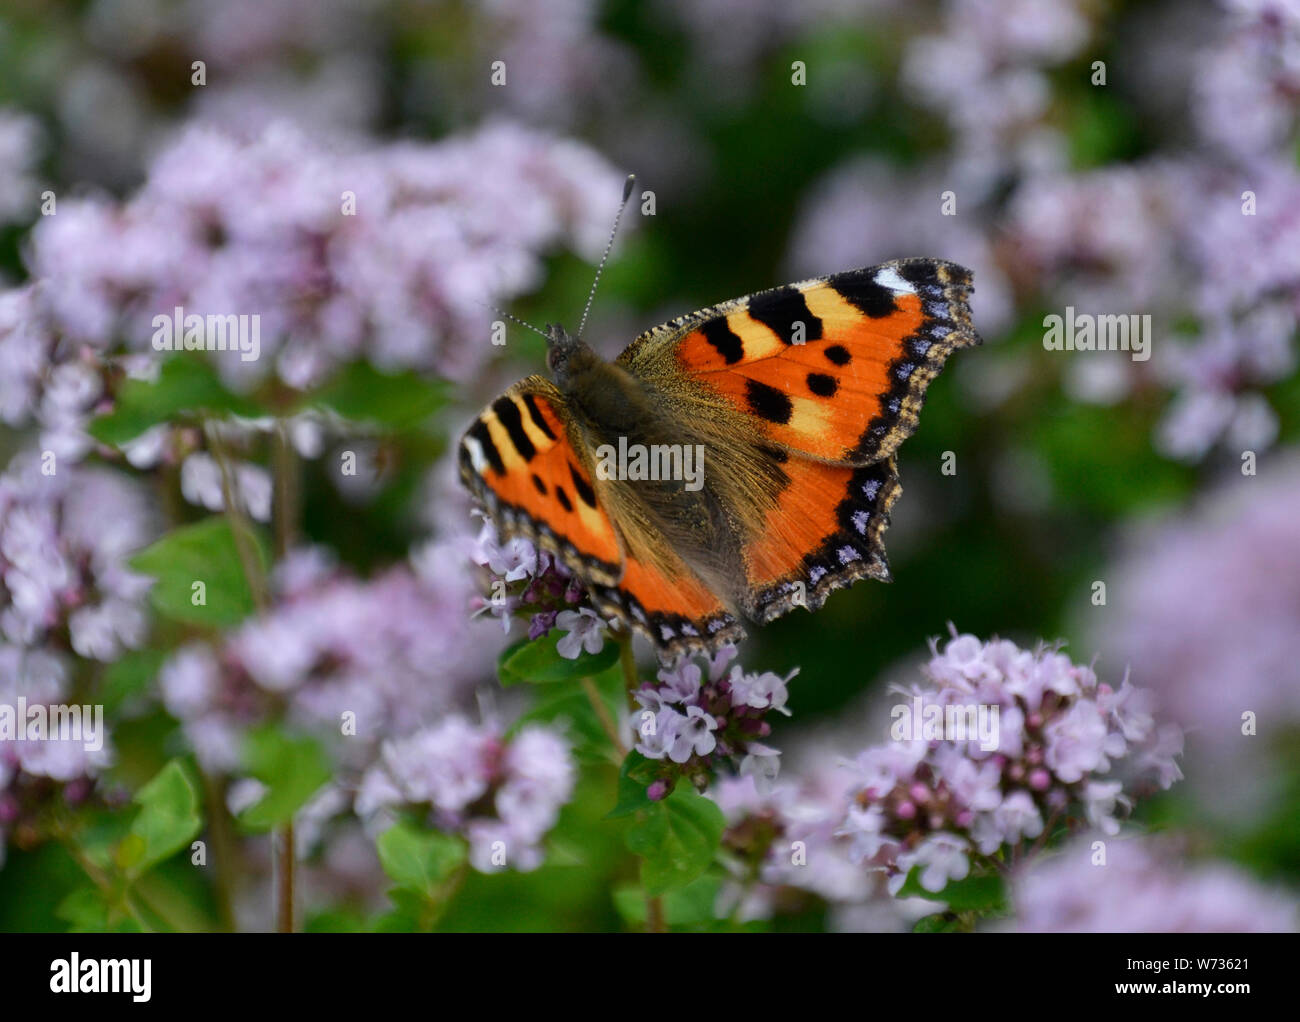 Piccola tartaruga farfalla sulla piccola fiori malva in un paese di lingua inglese Garden, Regno Unito Foto Stock